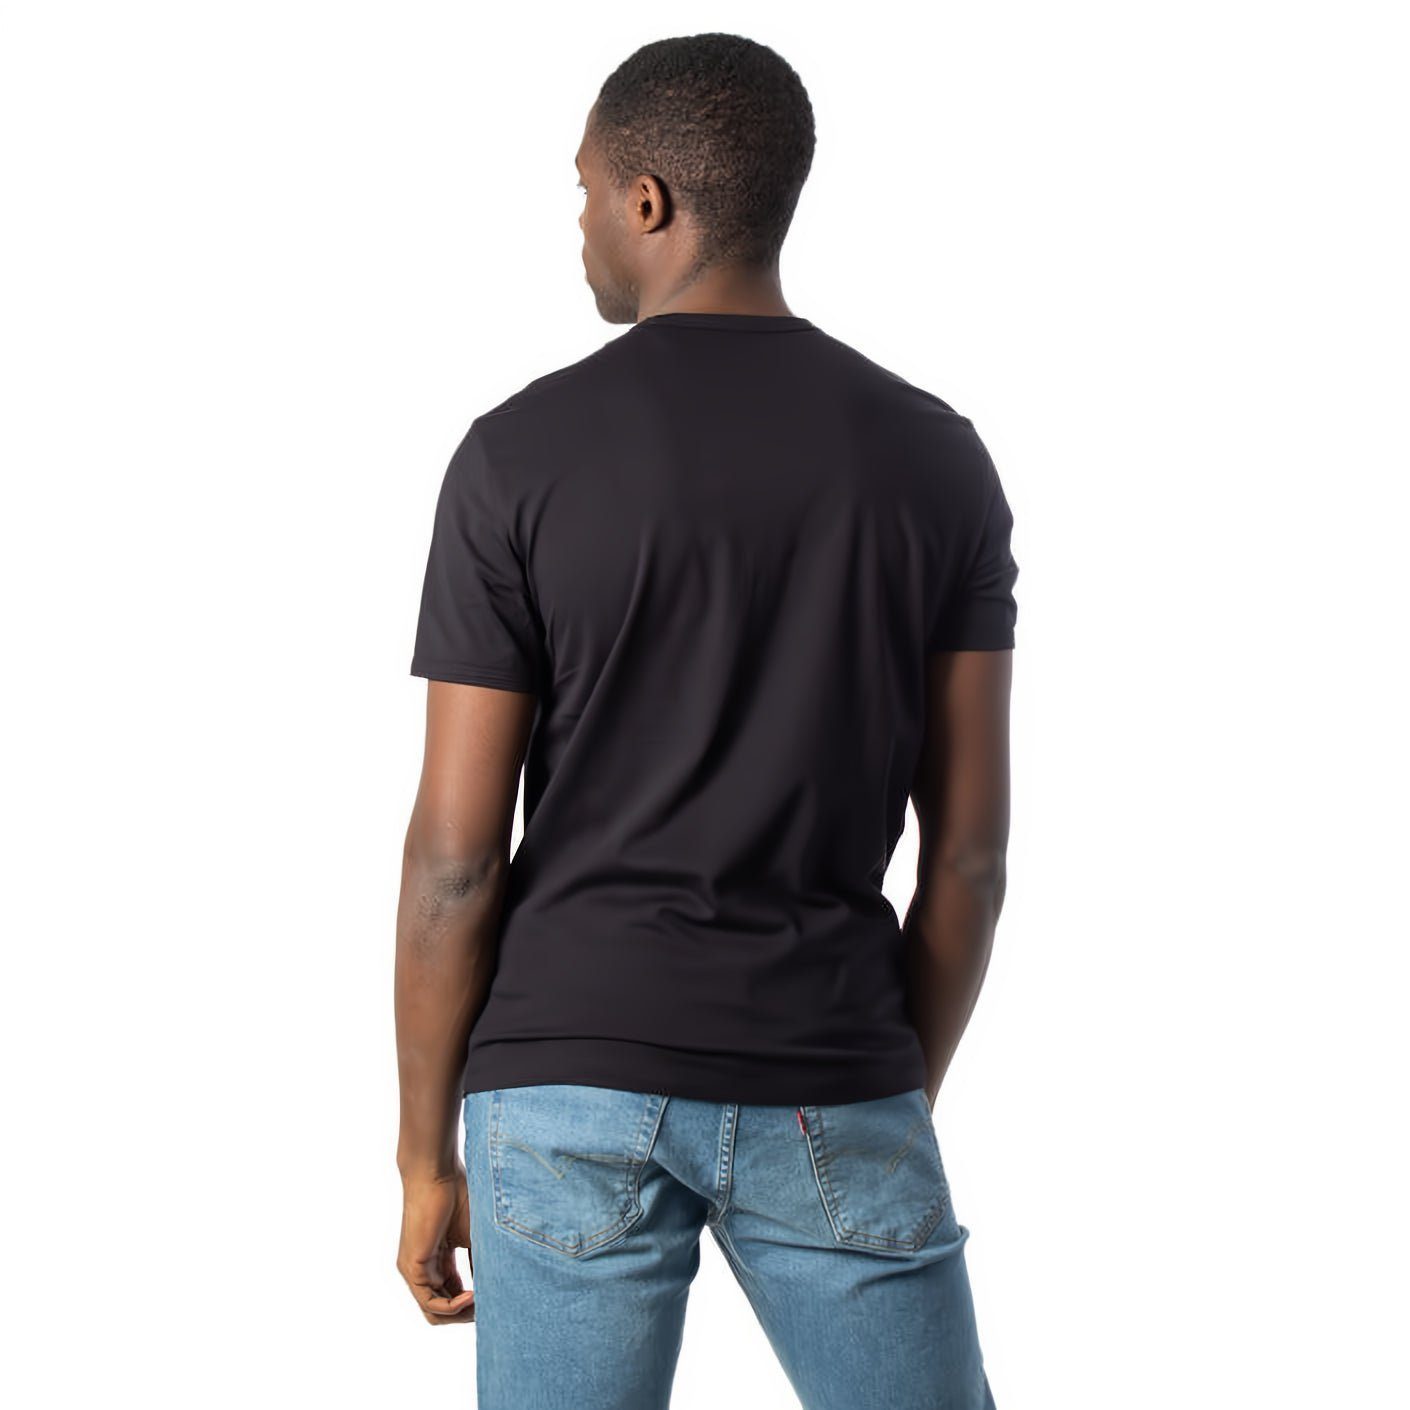 ARMANI EXCHANGE T-Shirt Must-Have für Ihre Kleidungskollektion! Rundhals, kurzarm, ein